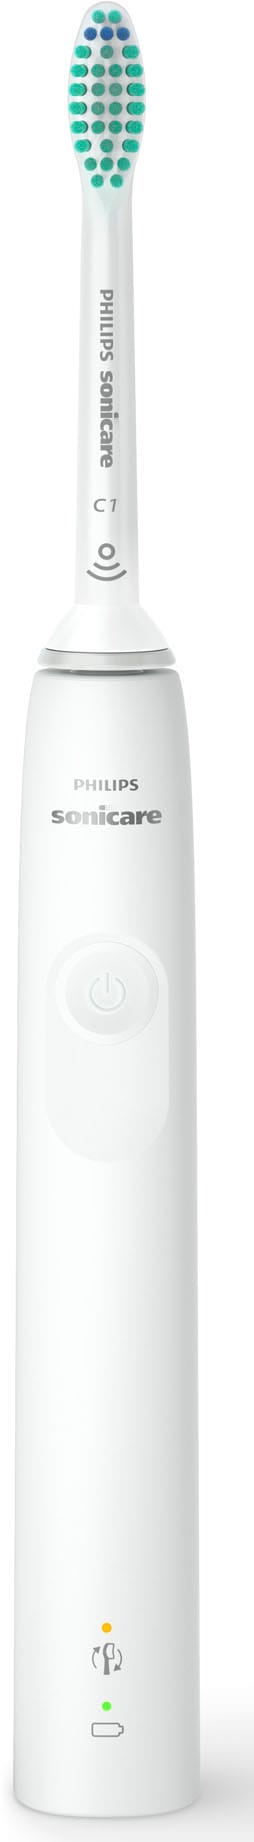 Philips Sonicare Elektrische Zahnbürste mit Aufsteckbürsten, 4-Quadranten-Timer Jahren XXL 1 3 3100 HX3673«, St. 2-Minuten-Timer Garantie »Series Schalltechnologie, und mit